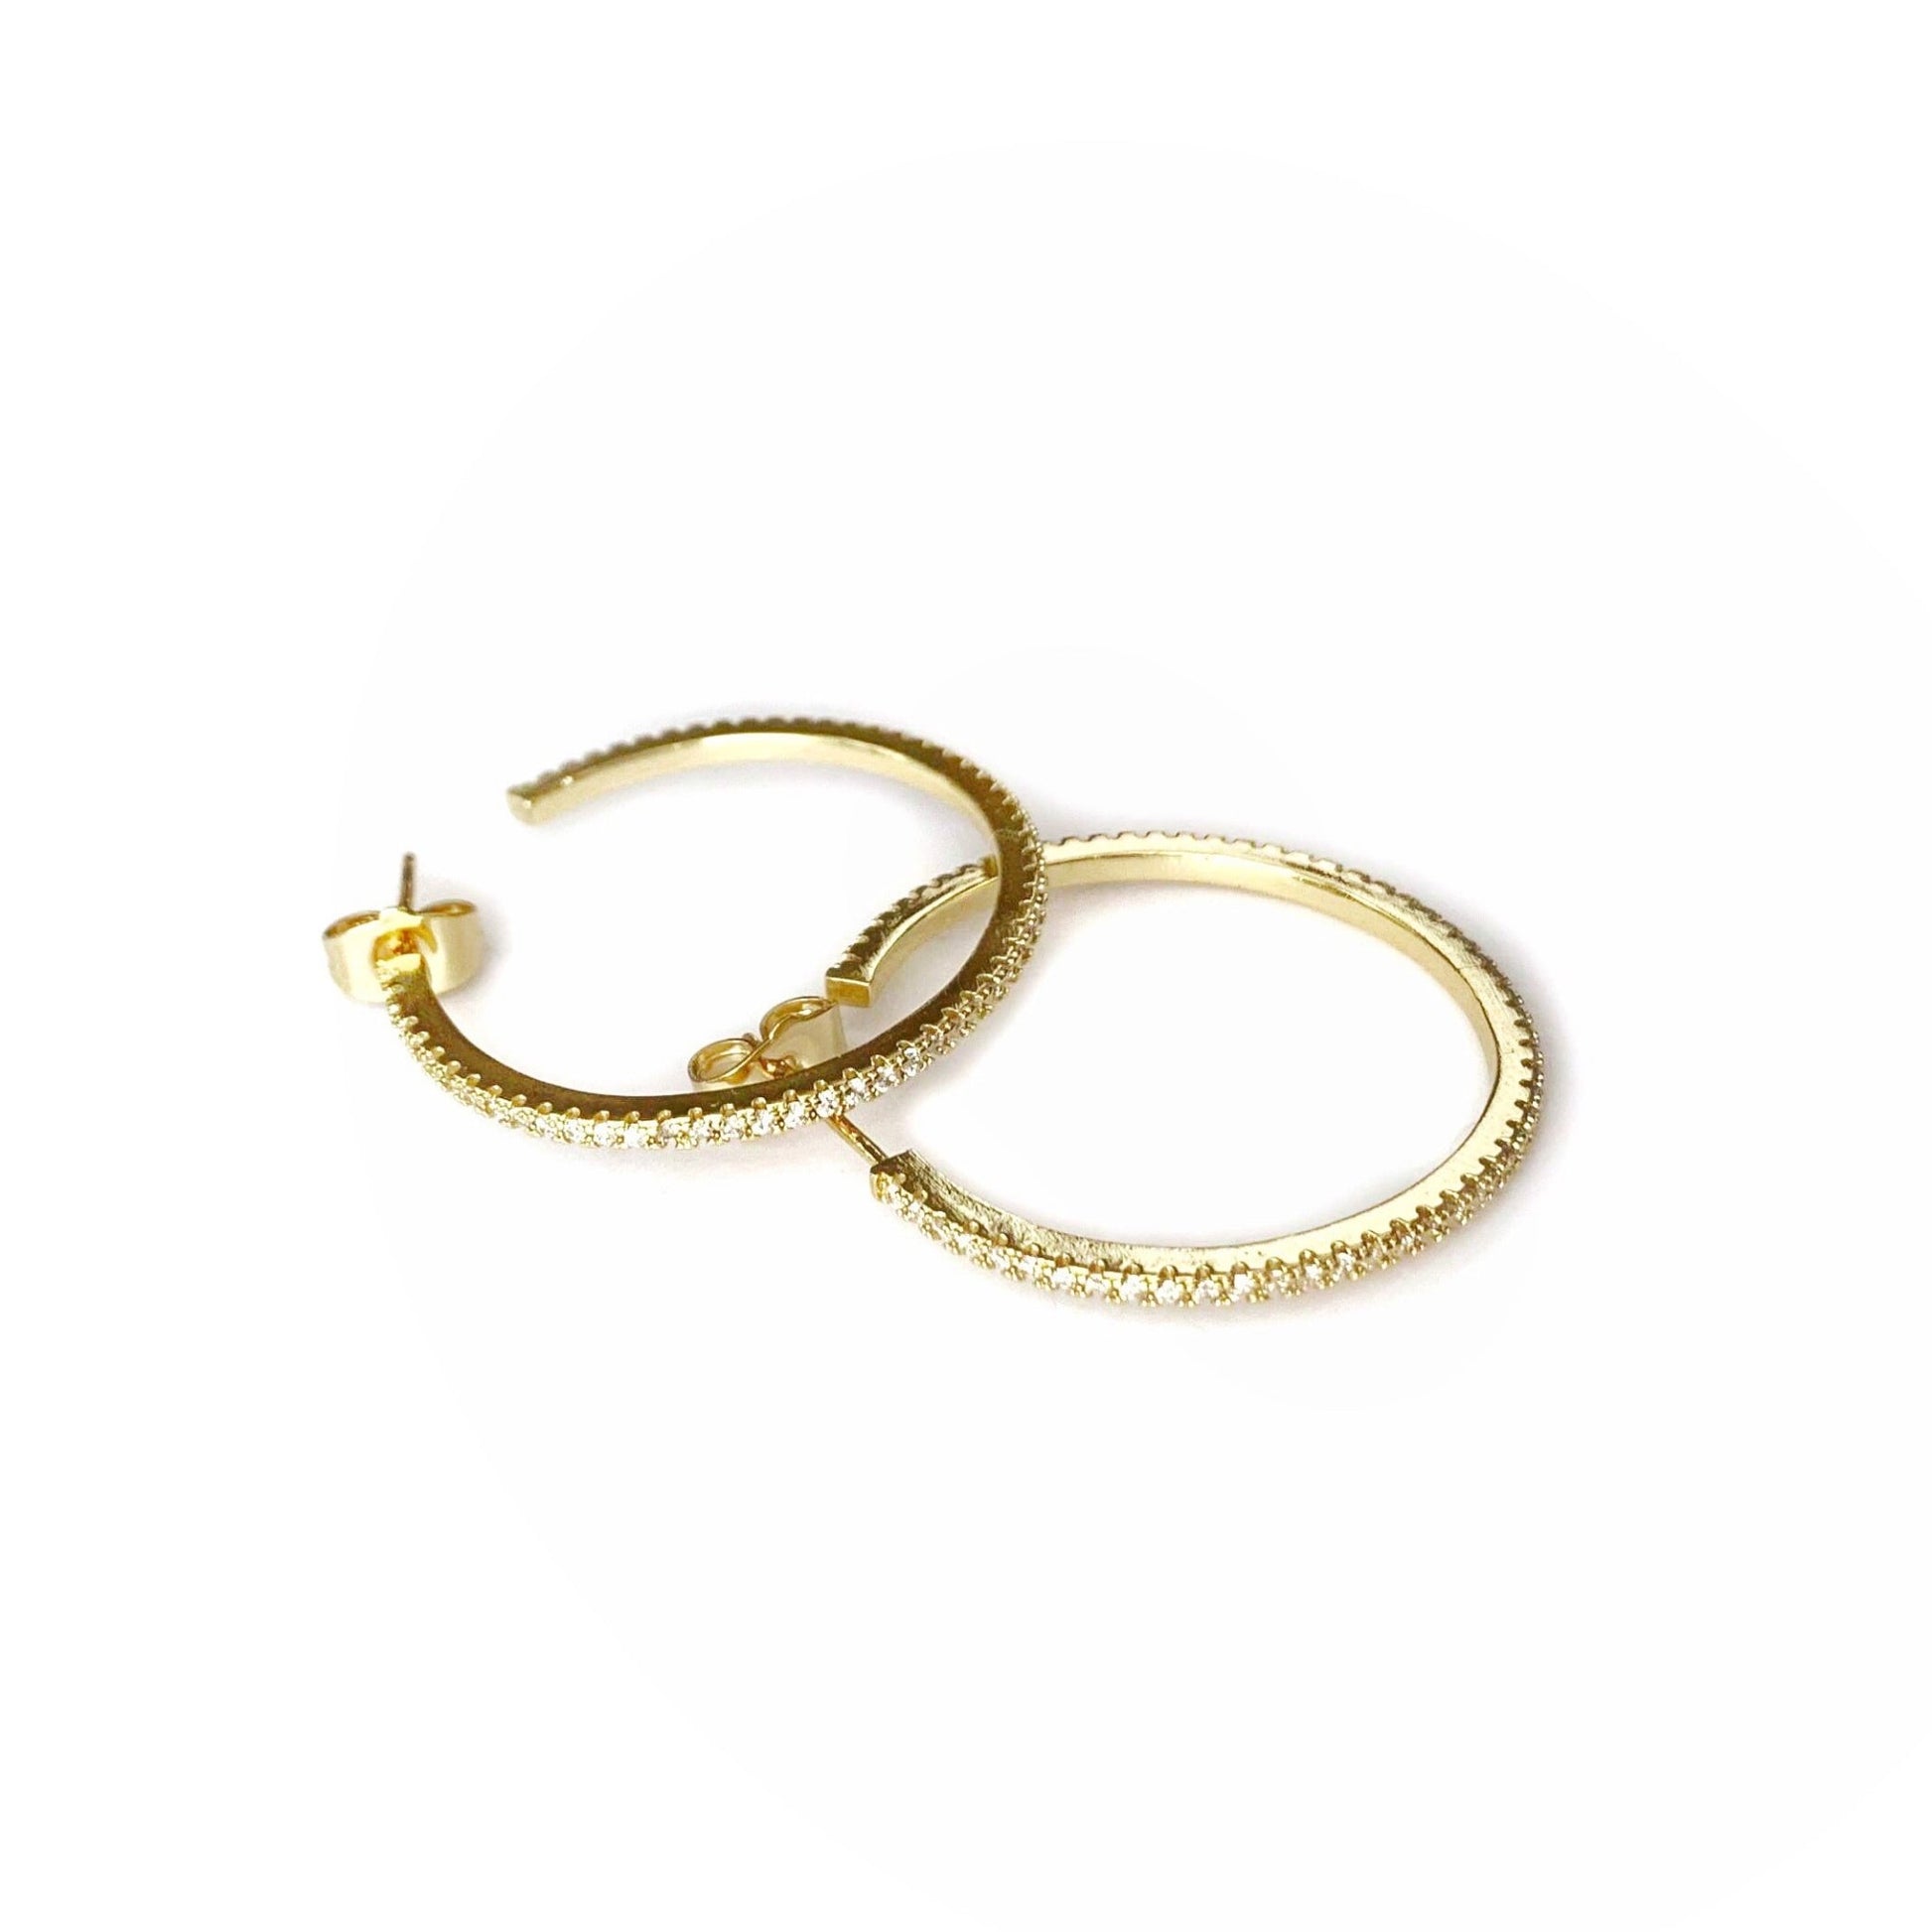 Petite Gold CZ Encrusted Hoop Earrings - BEST SELLERS - LJFjewelry